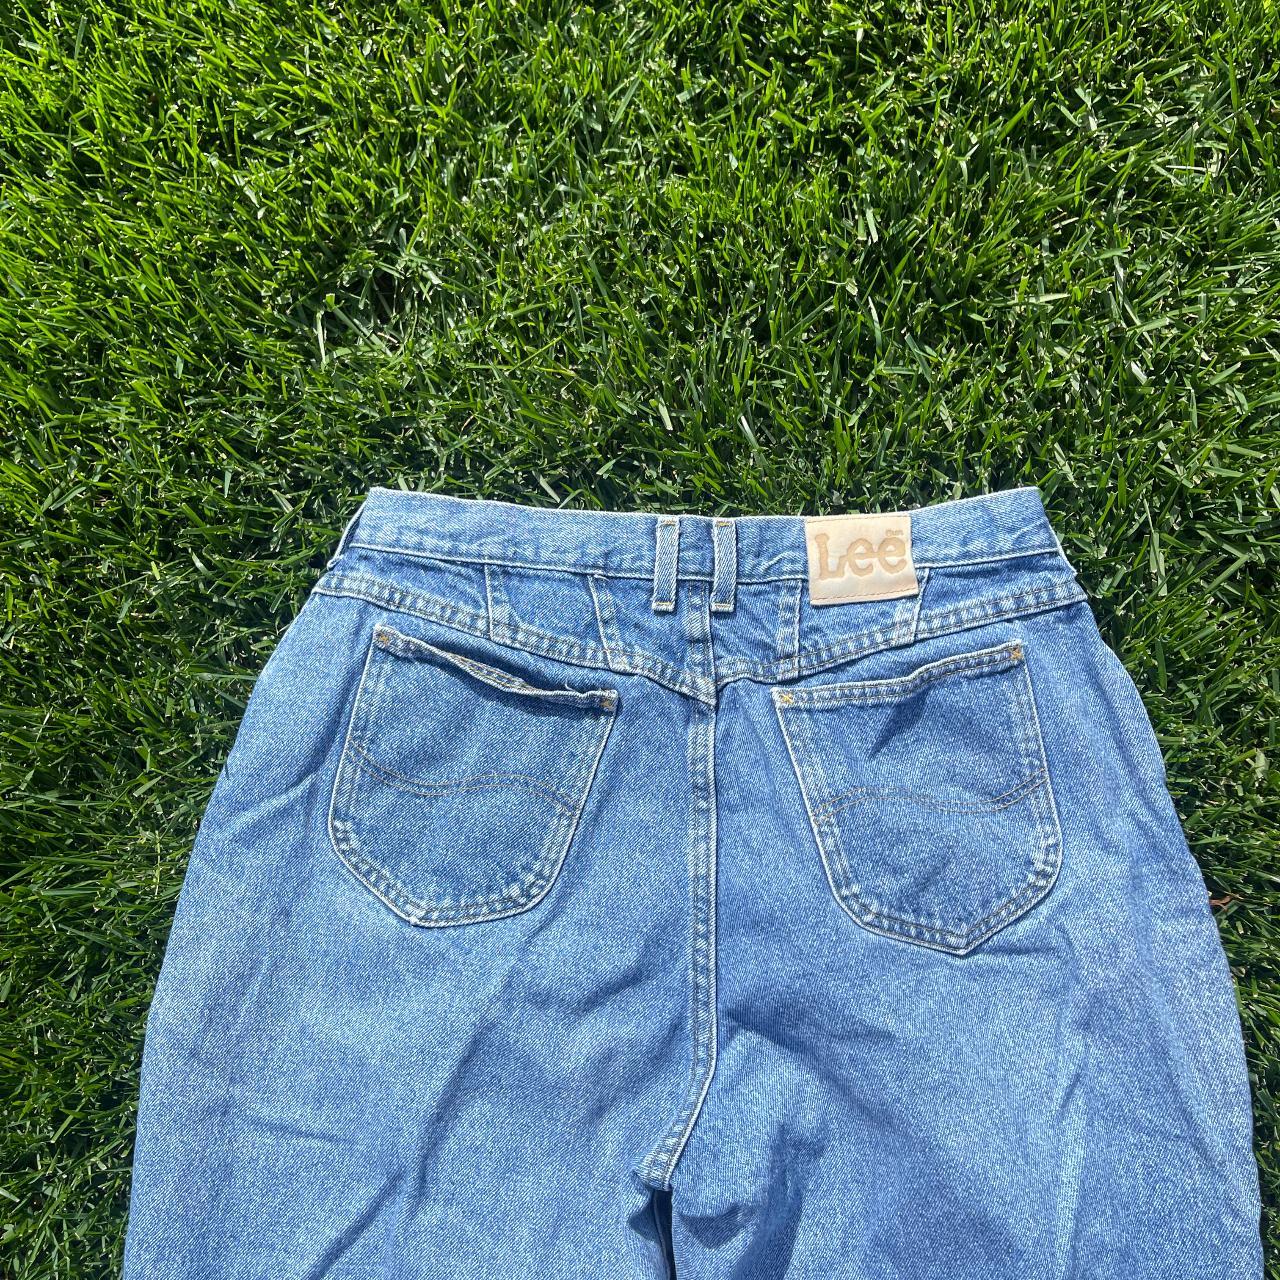 Vintage Lee Light Wash Denim Tapered Jeans Size 18... - Depop